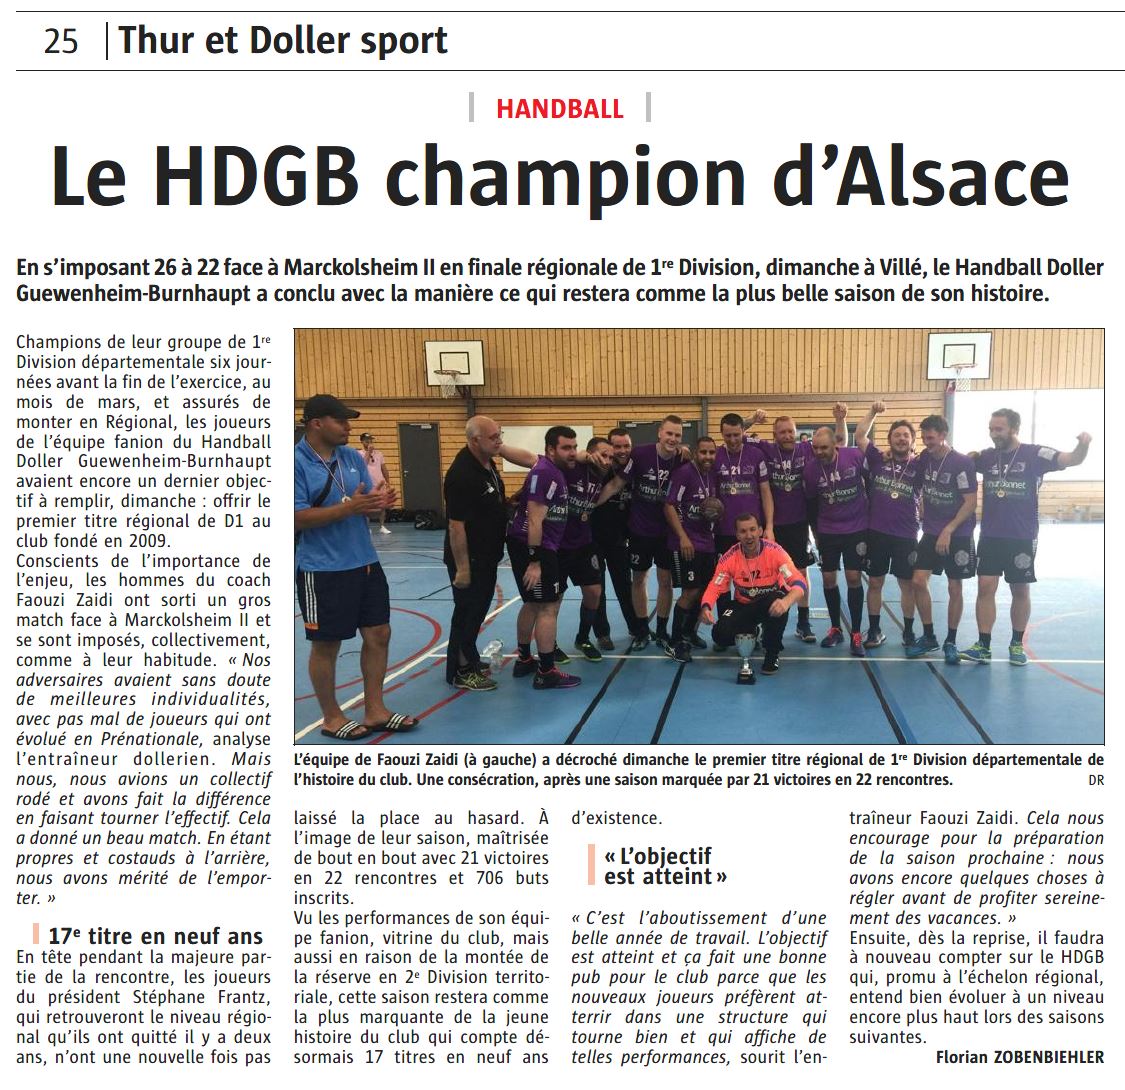 Le HDGB champion d'Alsace